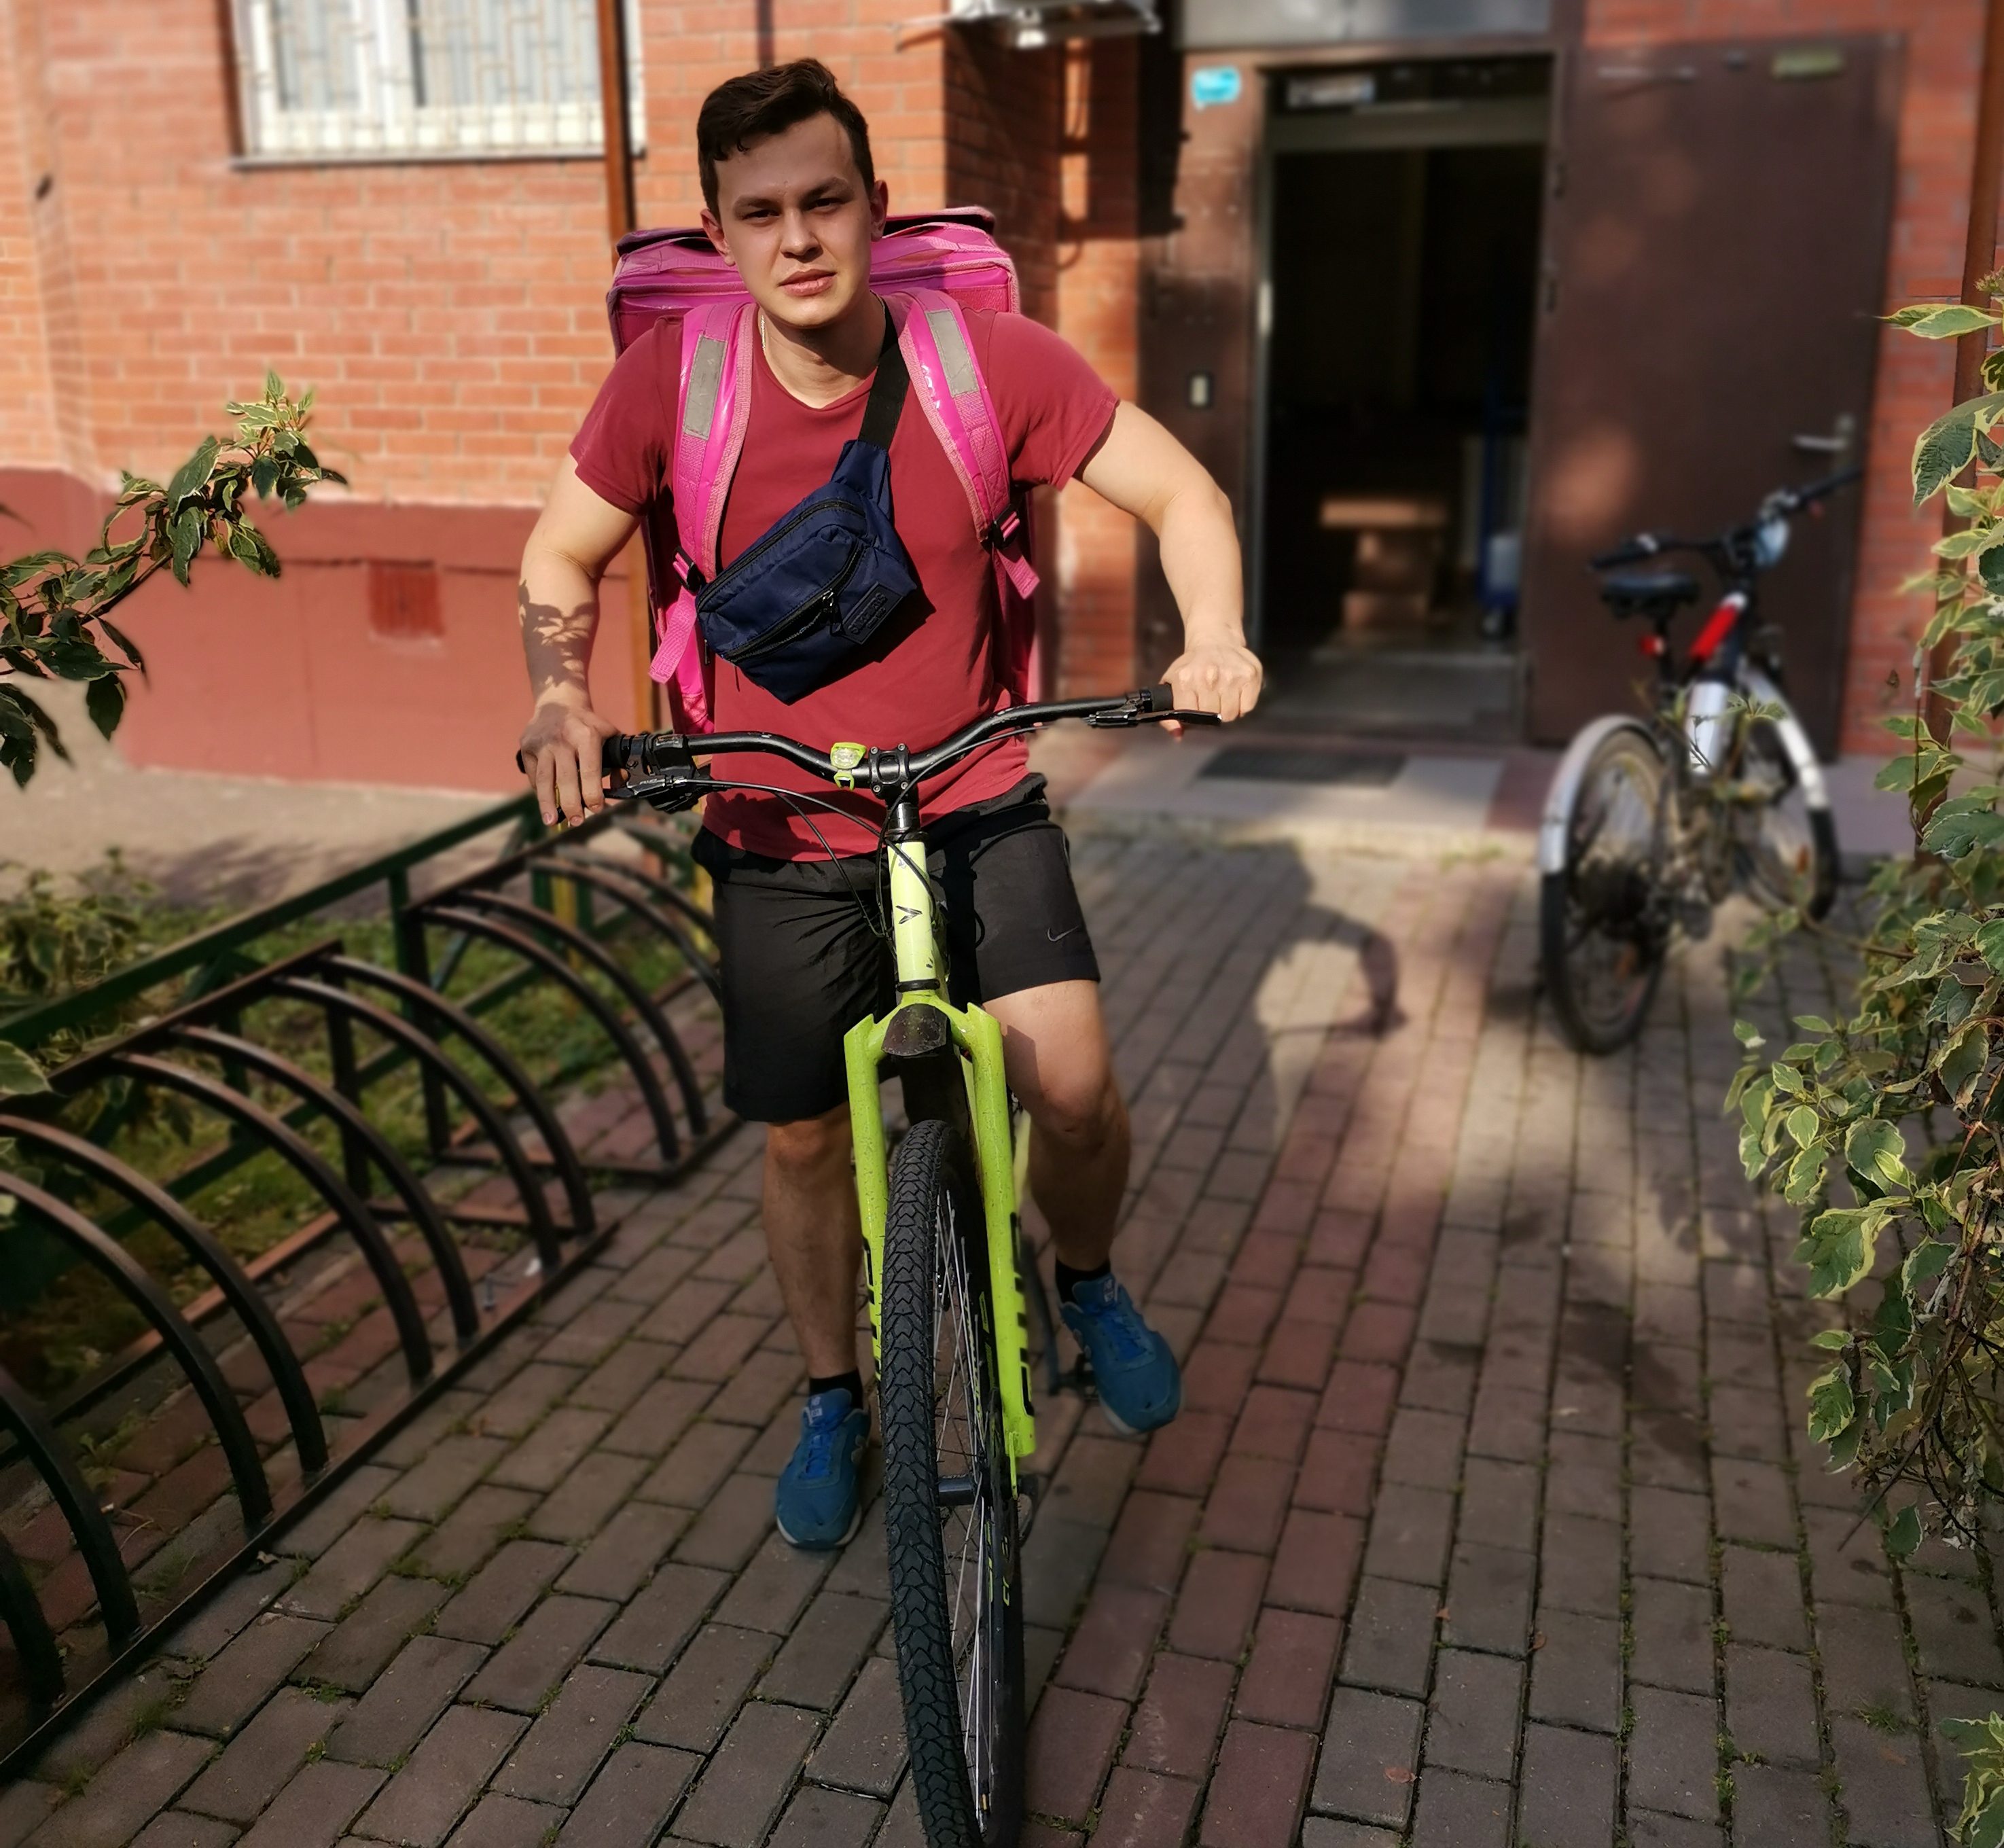 30 августа 2020 года. Курьер Никита Галанов каждый день наматывает на велосипеде в среднем по 30 километров. Фото: из личного архива